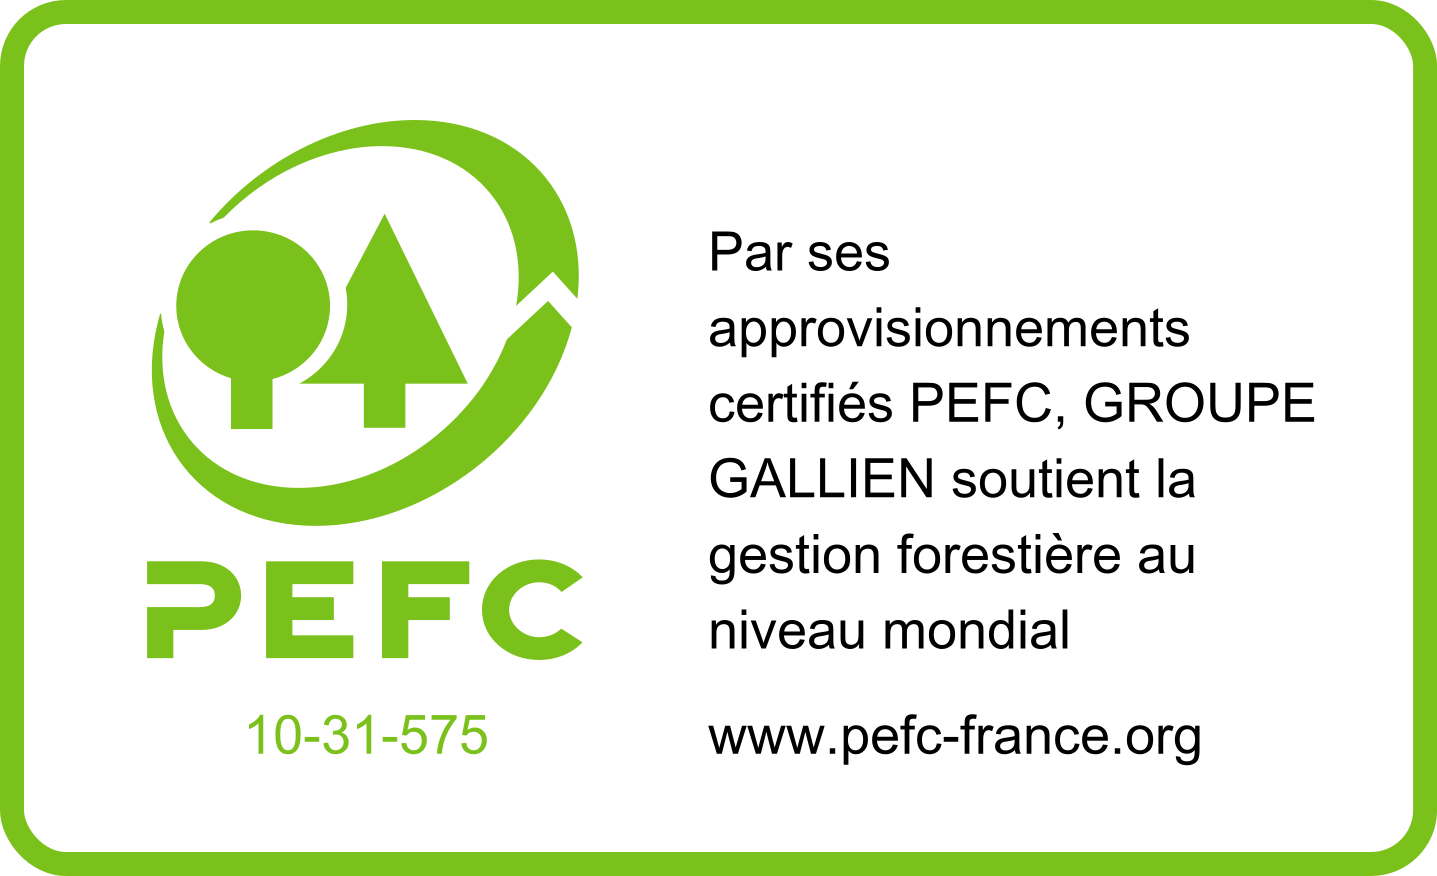 pefc-logo-fr4101-e1587126973356